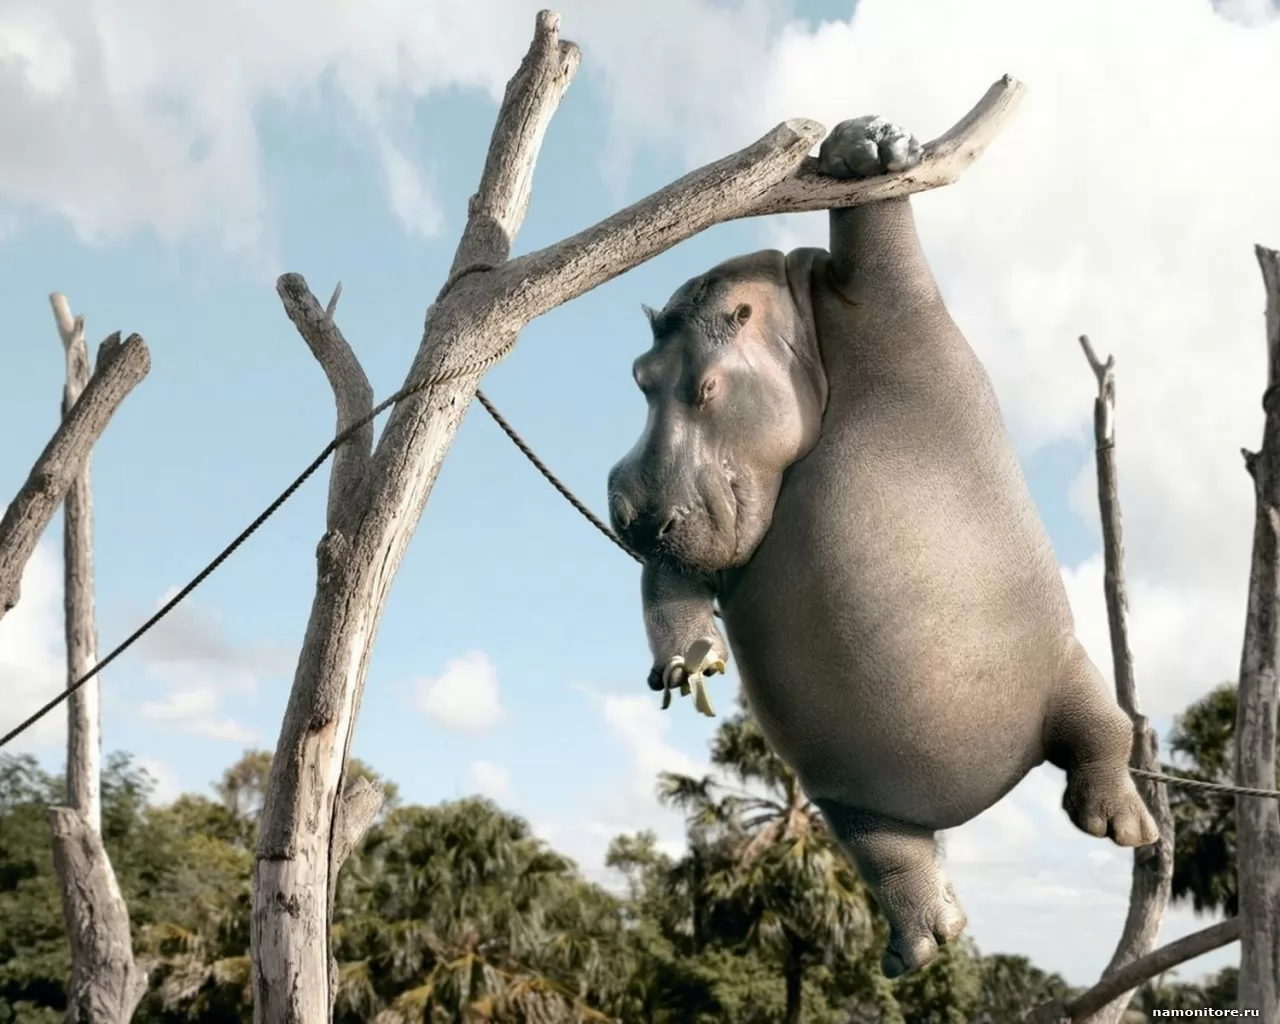 Бегемот с бананом на дереве, 3D, бегемоты, животные, рисованное, юмор х